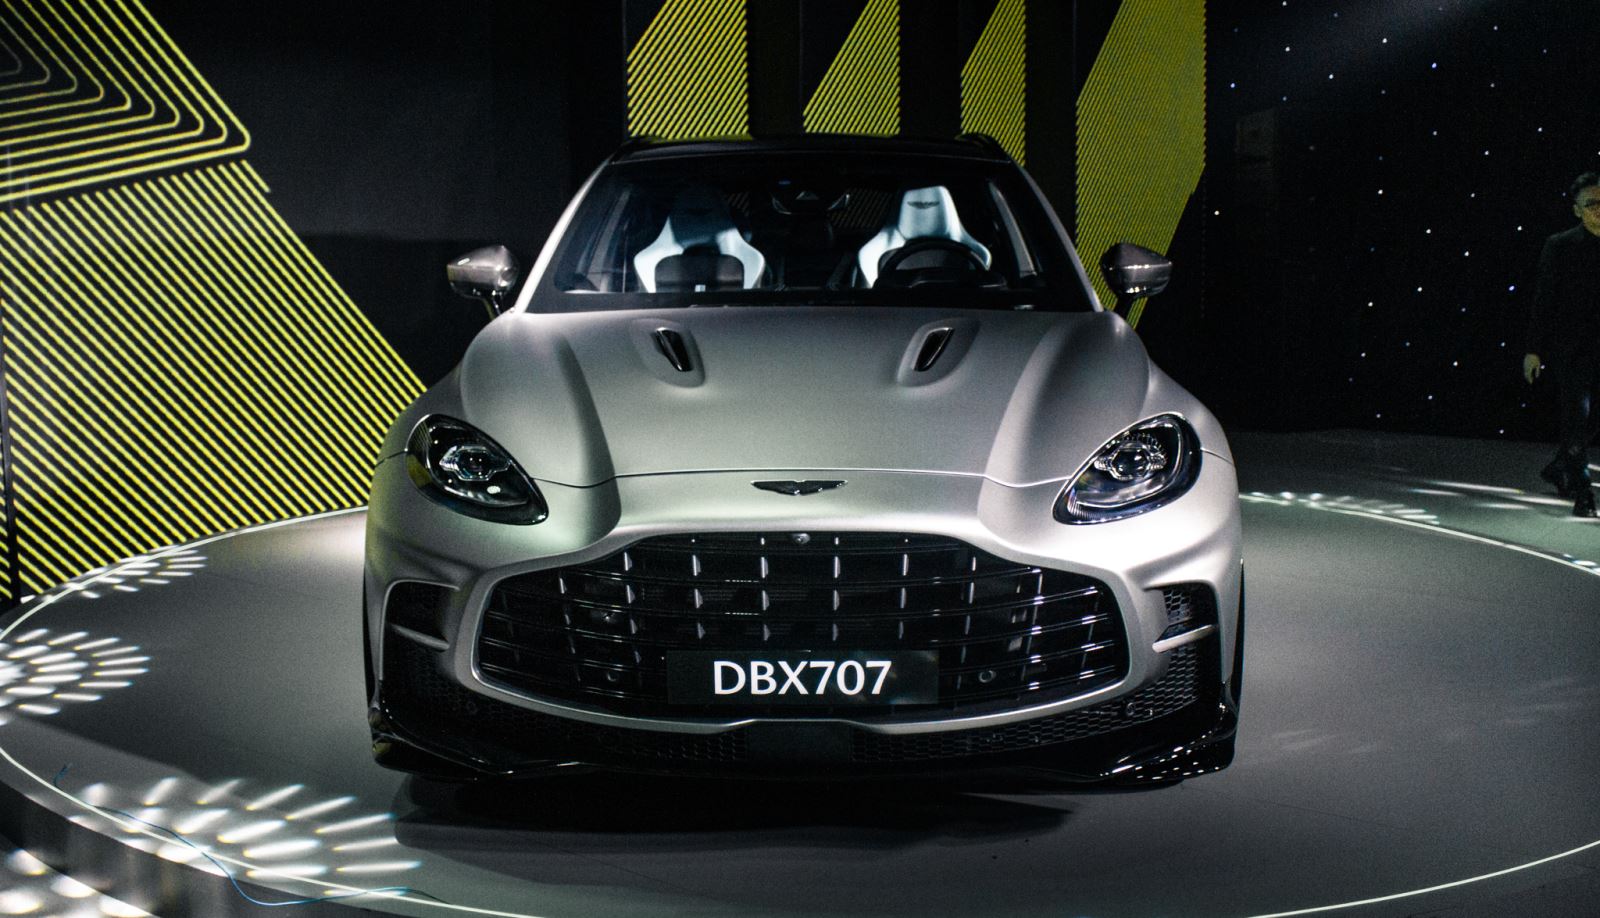 Ra mắt Aston Martin DBX707 tại Việt Nam: Giá từ 21,8 tỷ đồng, ông Đặng Lê Nguyên Vũ là khách hàng đầu tiên - Ảnh 3.